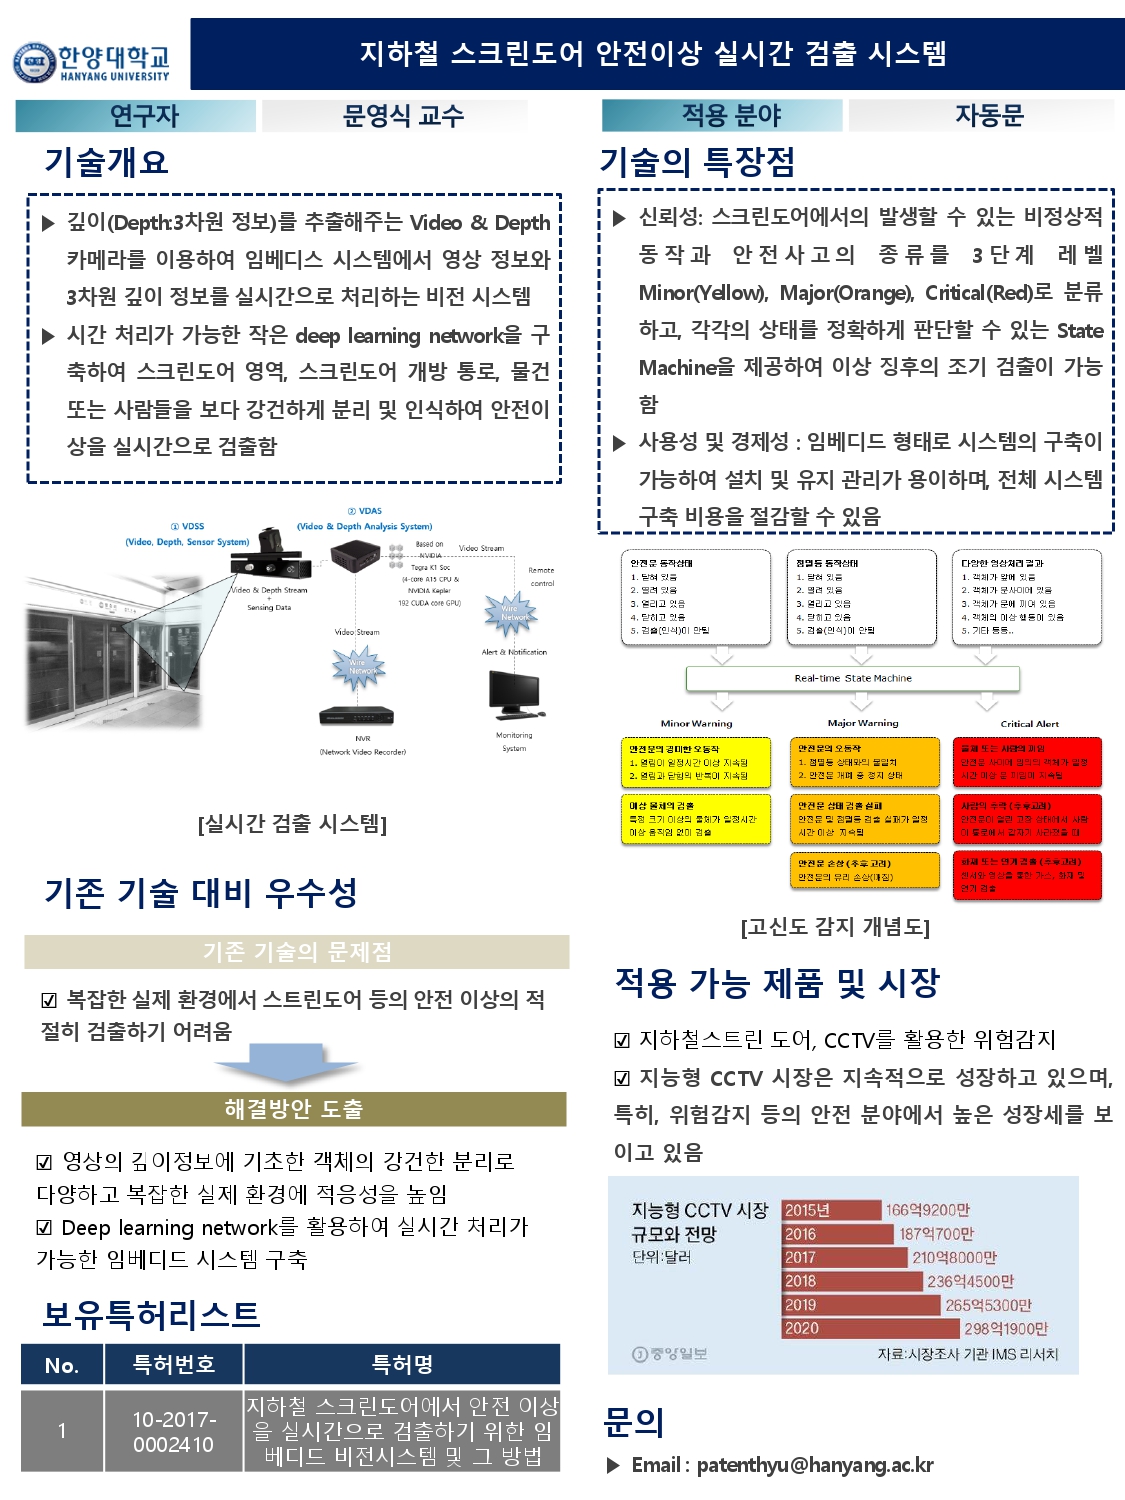 21_한양대학교_지하철 스크린도어 안전이상 실시간 검출 시스템_page-0001.jpg